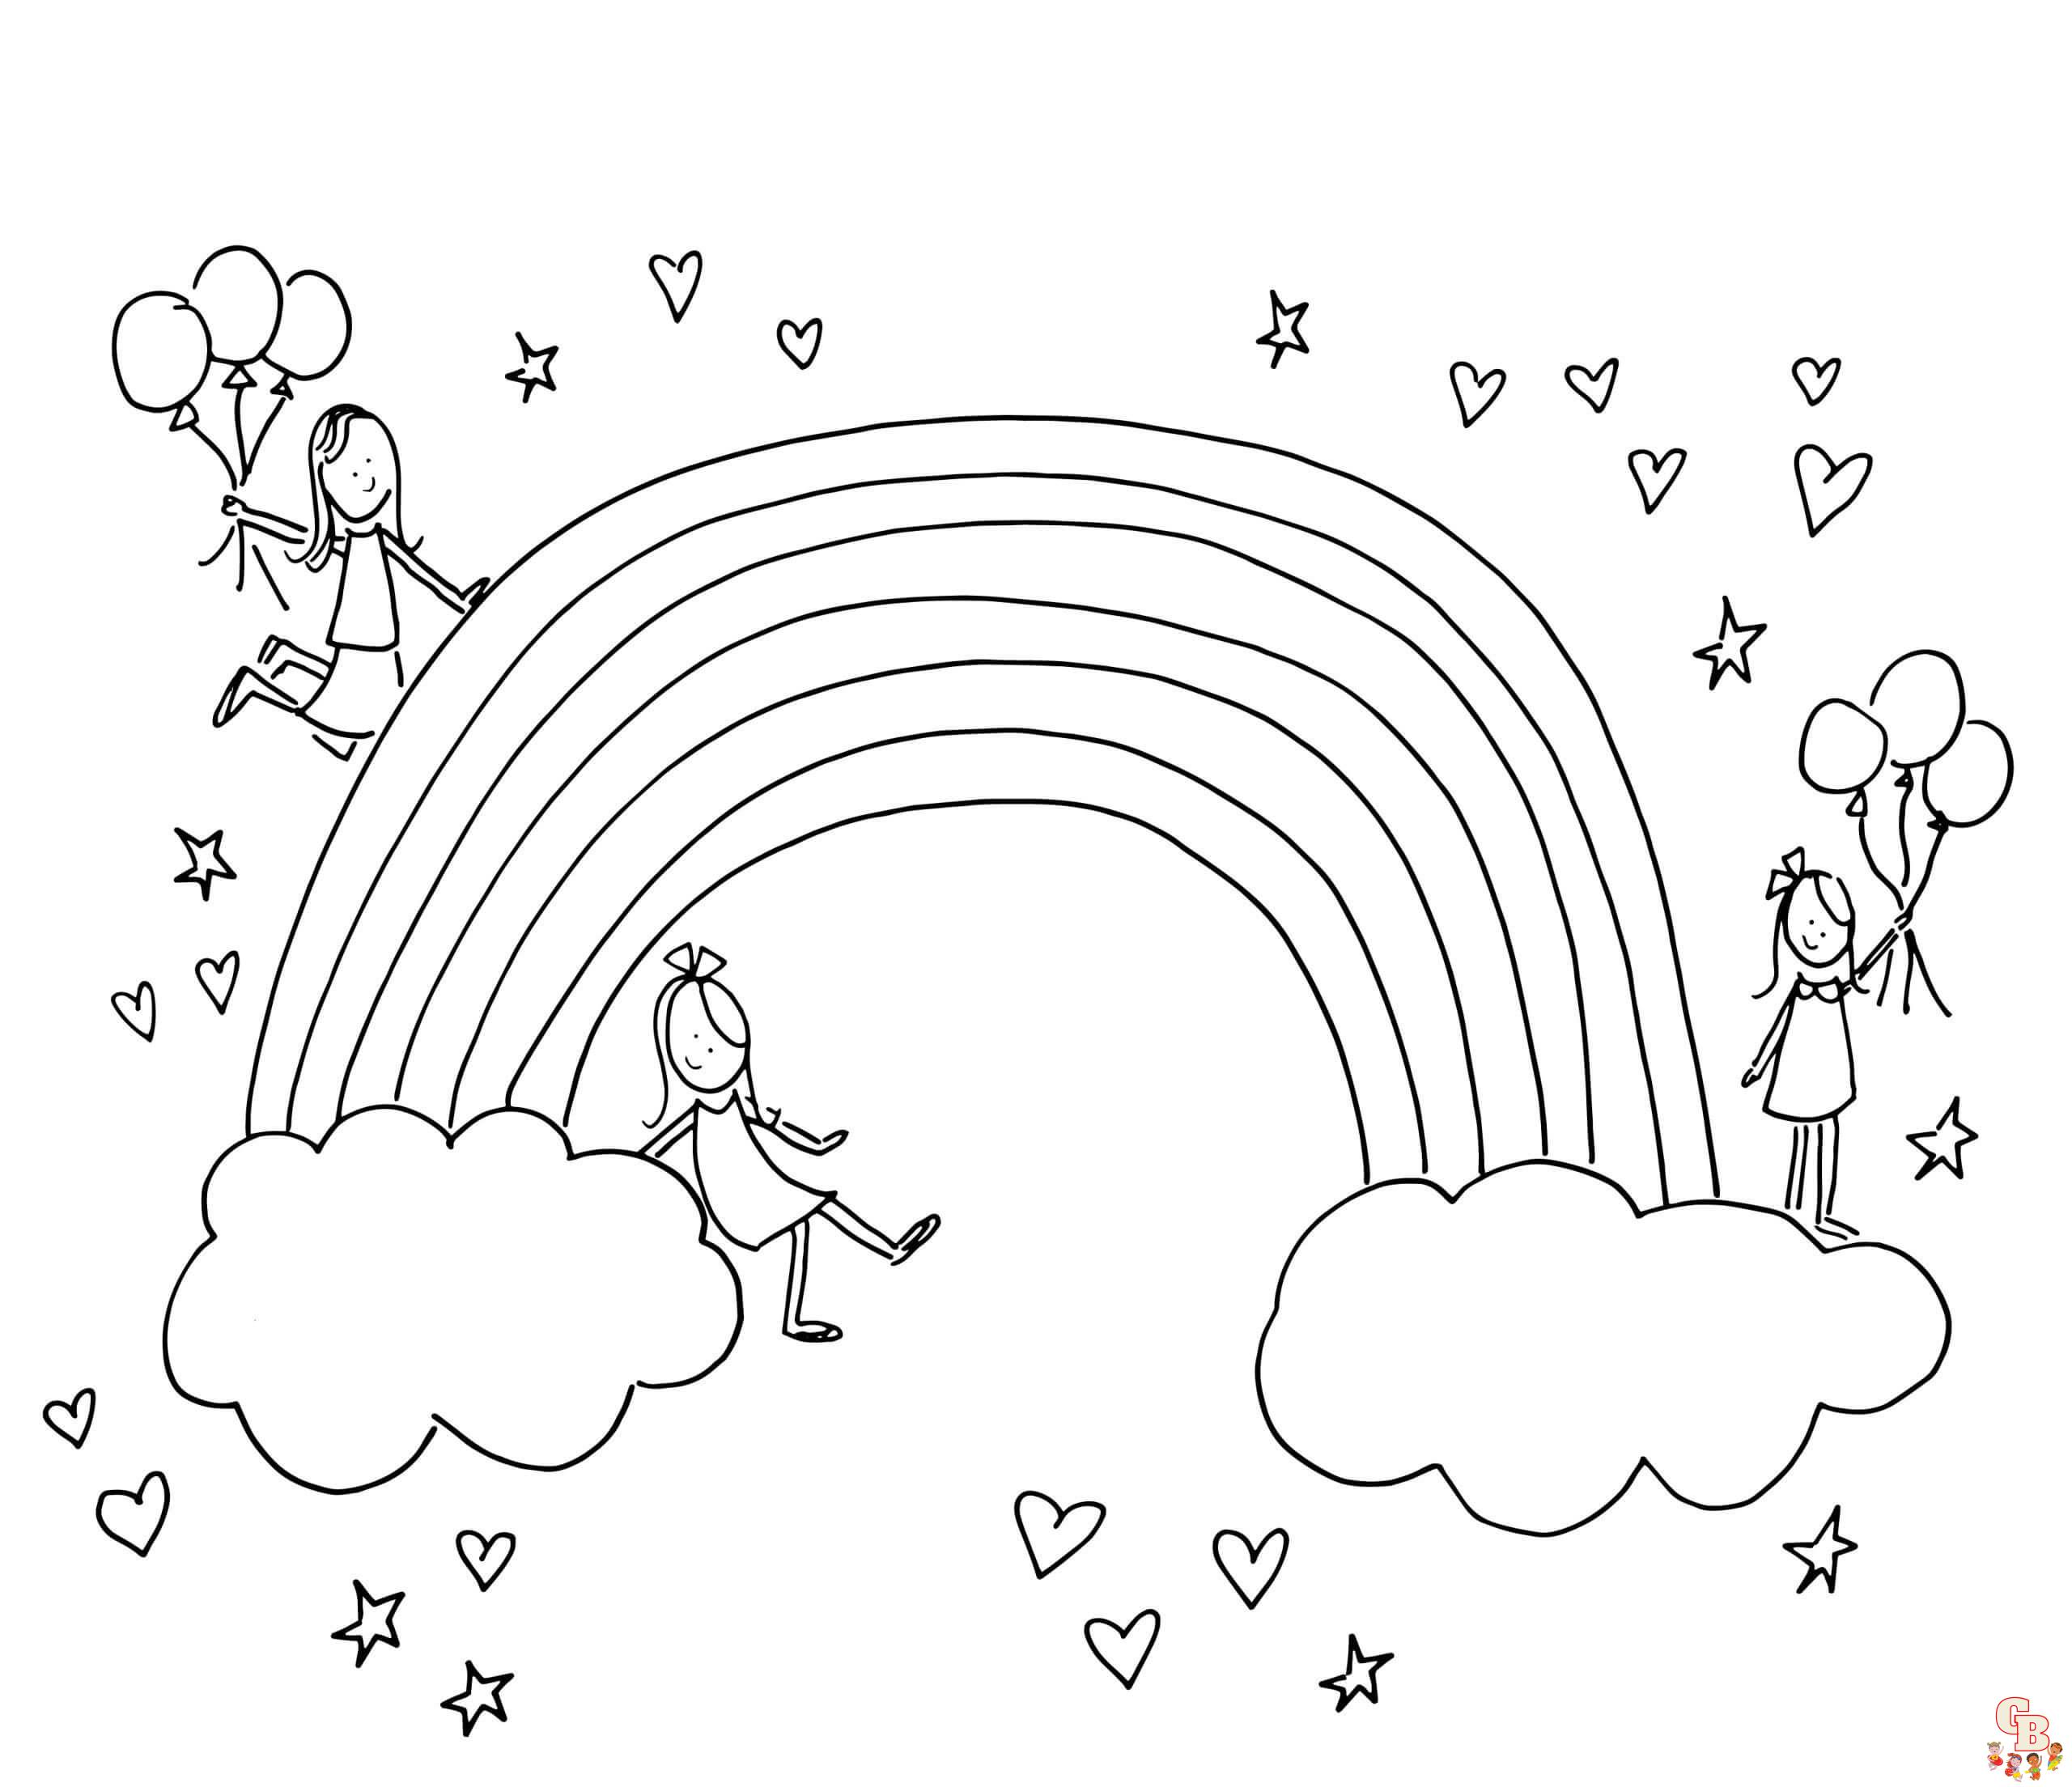 Ücretsiz Gökkuşağı Boyama Desenleri - Çocuklar için Online Gökkuşağı Boyama Sayfaları